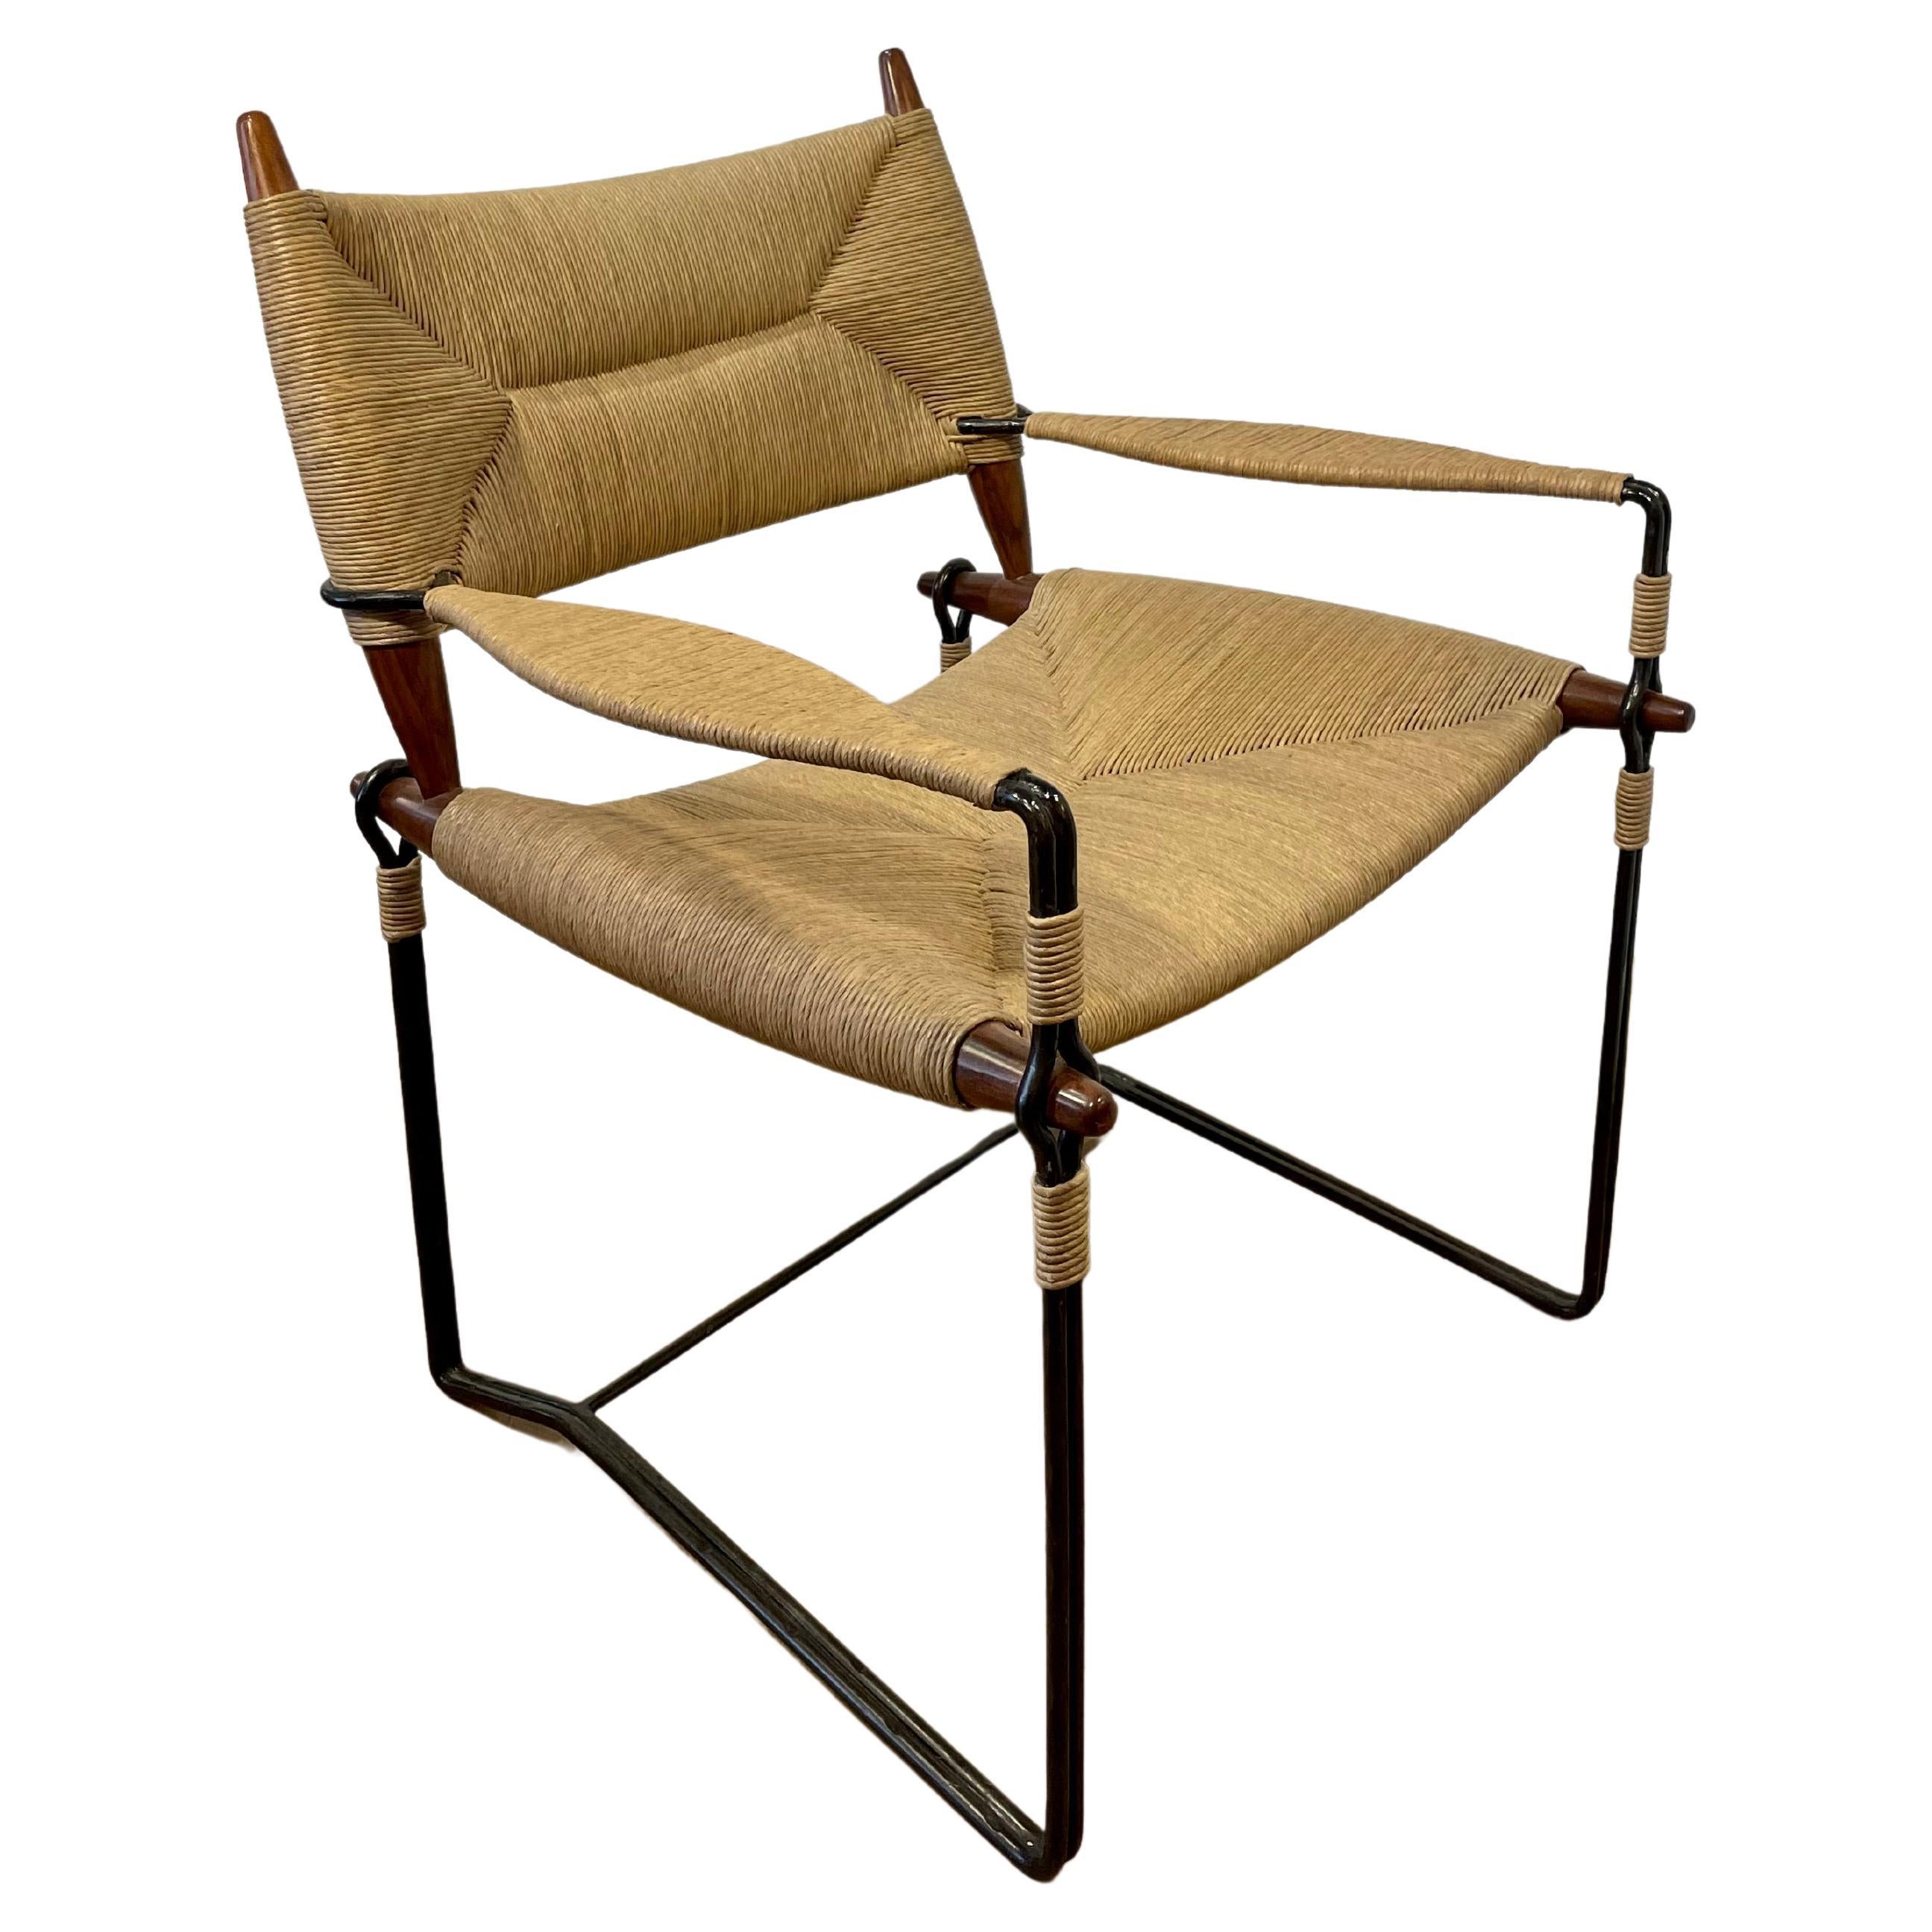 Der Baton Arm Chair ist ein architektonisches Prunkstück, bei dem geschwärzter Stahl und dänischer Cord zu einem modernen Schreibtischstuhl oder Beistellstuhl verschmelzen. Der Baton Arm Chair wurde mit viel Fingerspitzengefühl und Liebe zum Detail